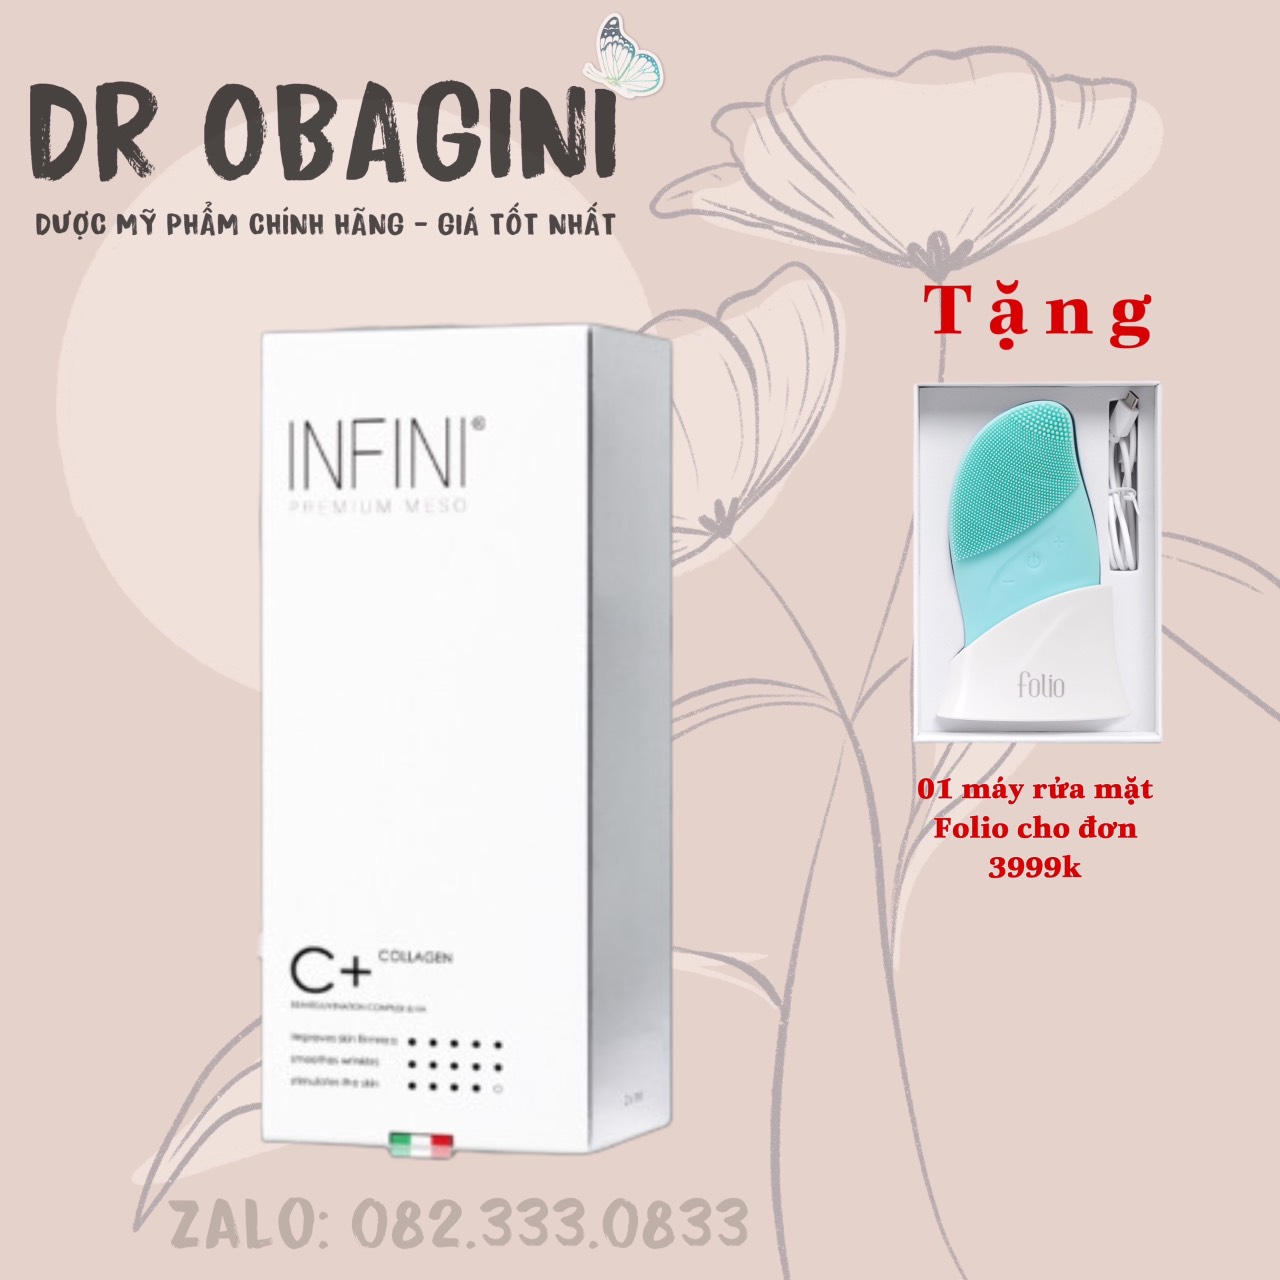 INFINI C+ Collagen - Hoạt Chất BAP Nâng Cơ, Trẻ Hóa Da Mặt Từ Ý